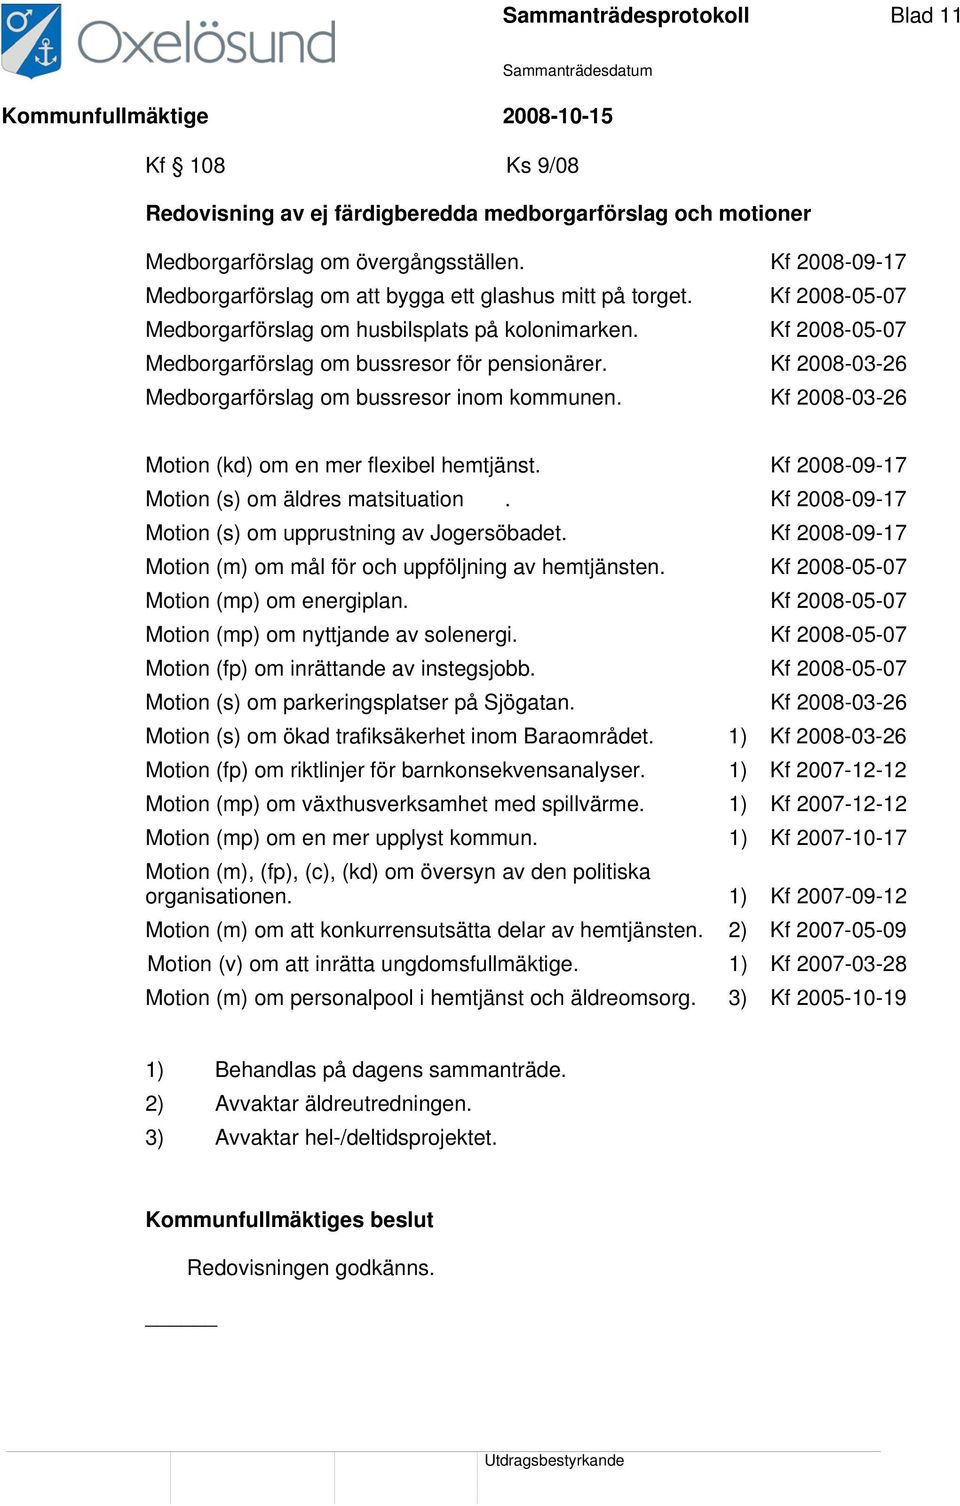 Kf 2008-03-26 Medborgarförslag om bussresor inom kommunen. Kf 2008-03-26 Motion (kd) om en mer flexibel hemtjänst. Kf 2008-09-17 Motion (s) om äldres matsituation.